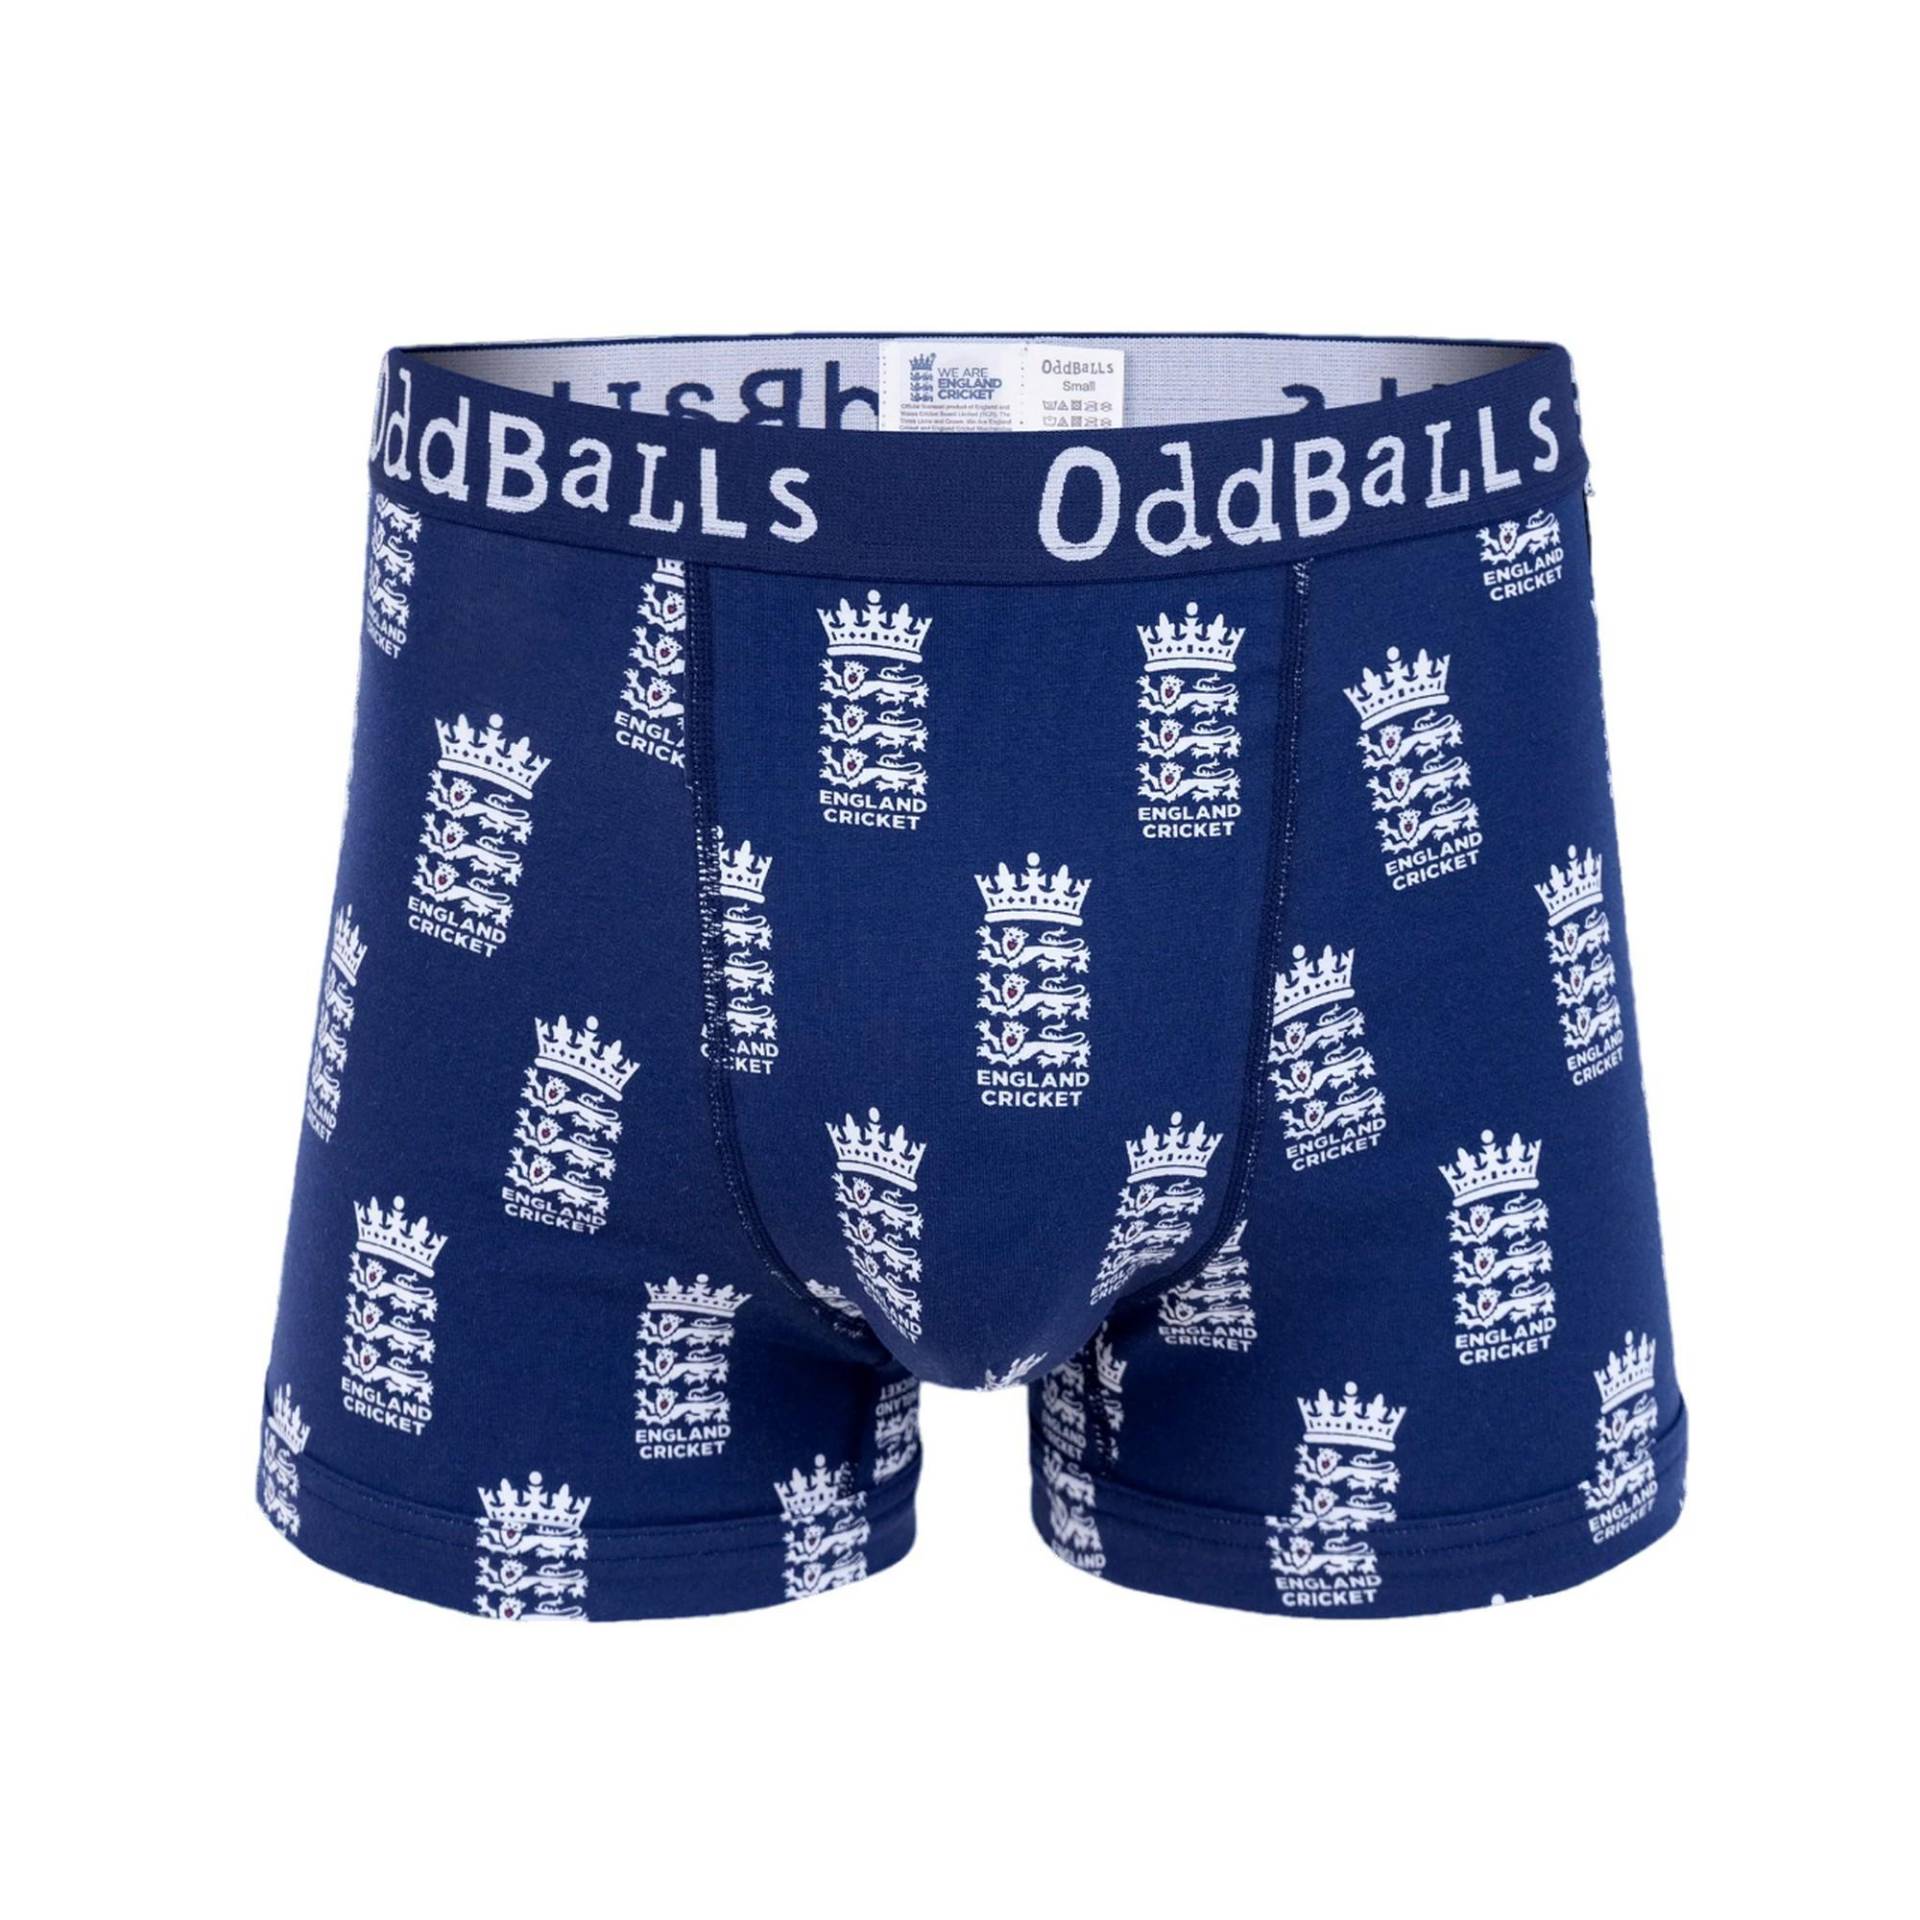 Boxershorts Herren Blau XL von OddBalls